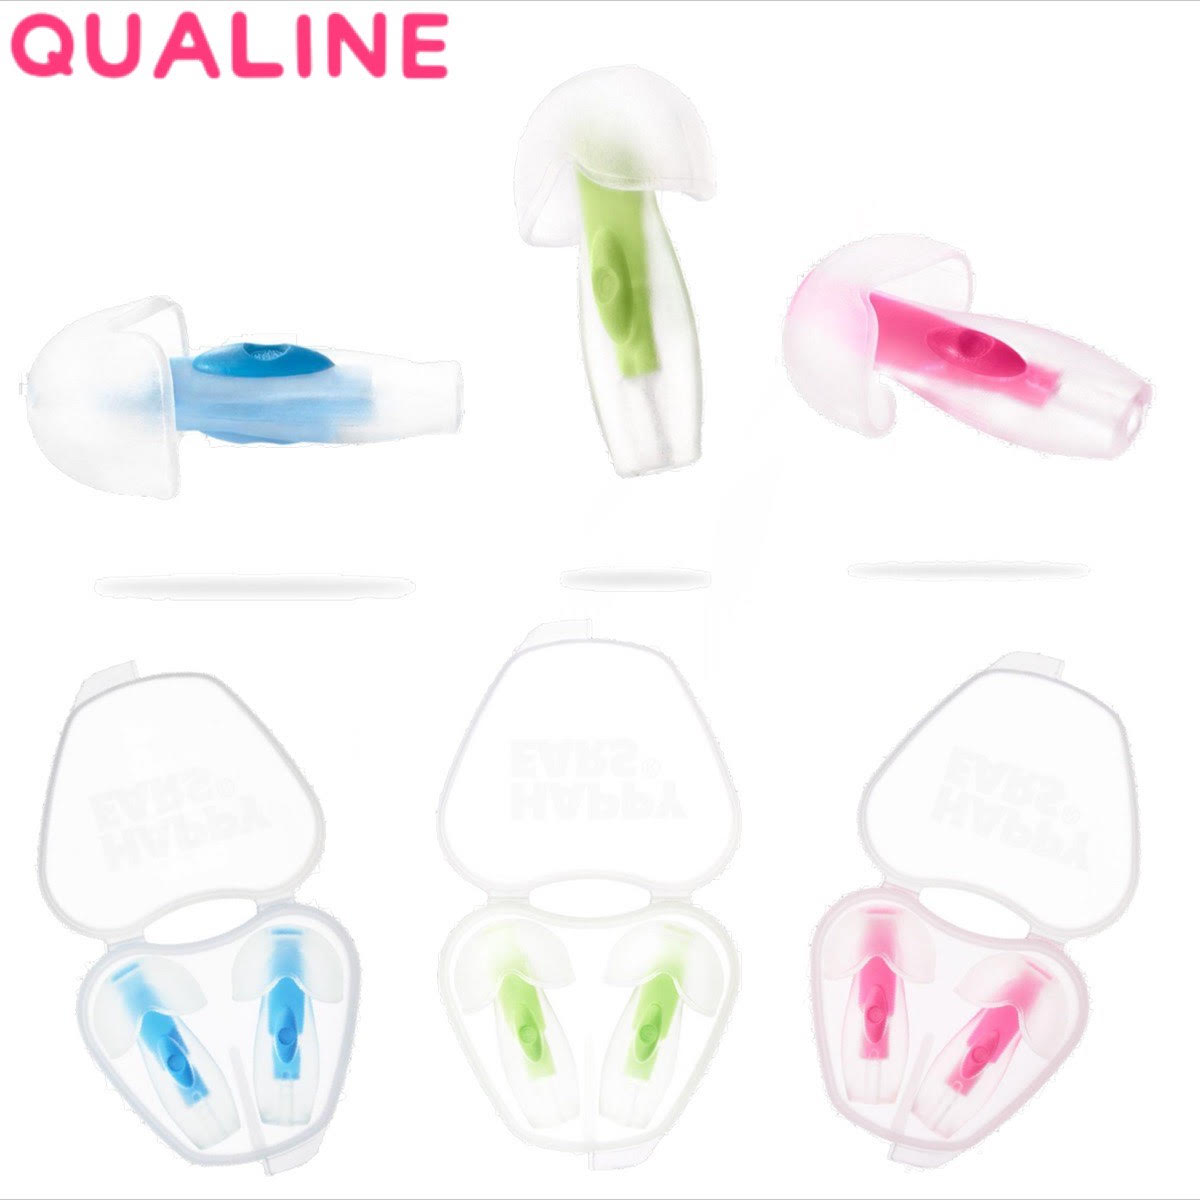 サーフィン 耳栓 チョウカクホゴグ クオリネ シリコン Qualine 聴覚保護具 サーファーズイヤー 3カラー